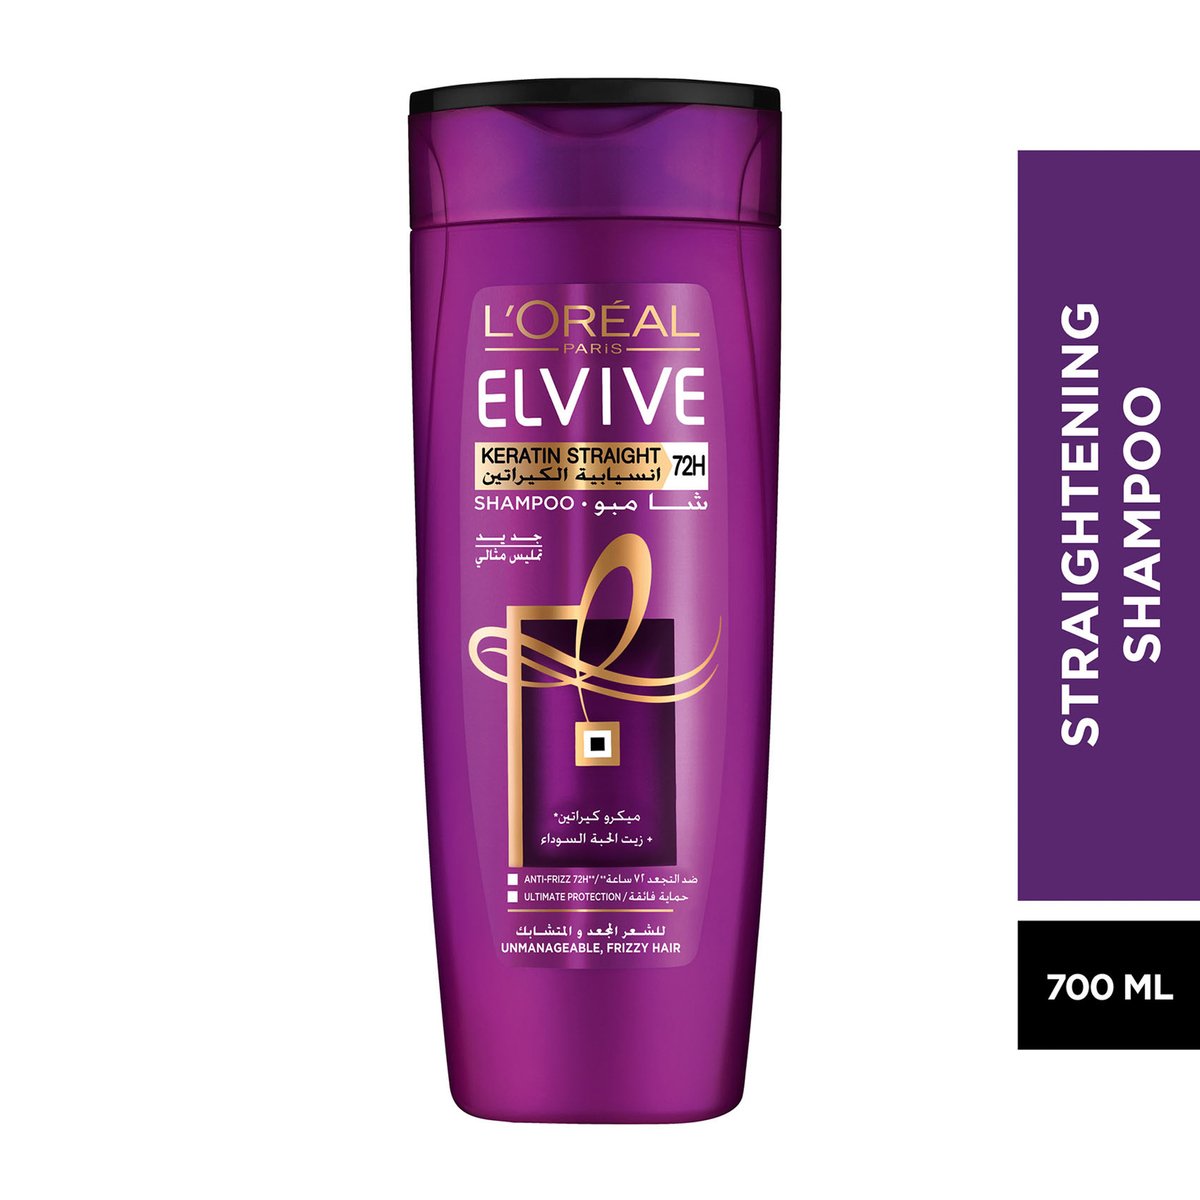 L'Oreal Elvive Keratin Straight Shampoo 700 ml